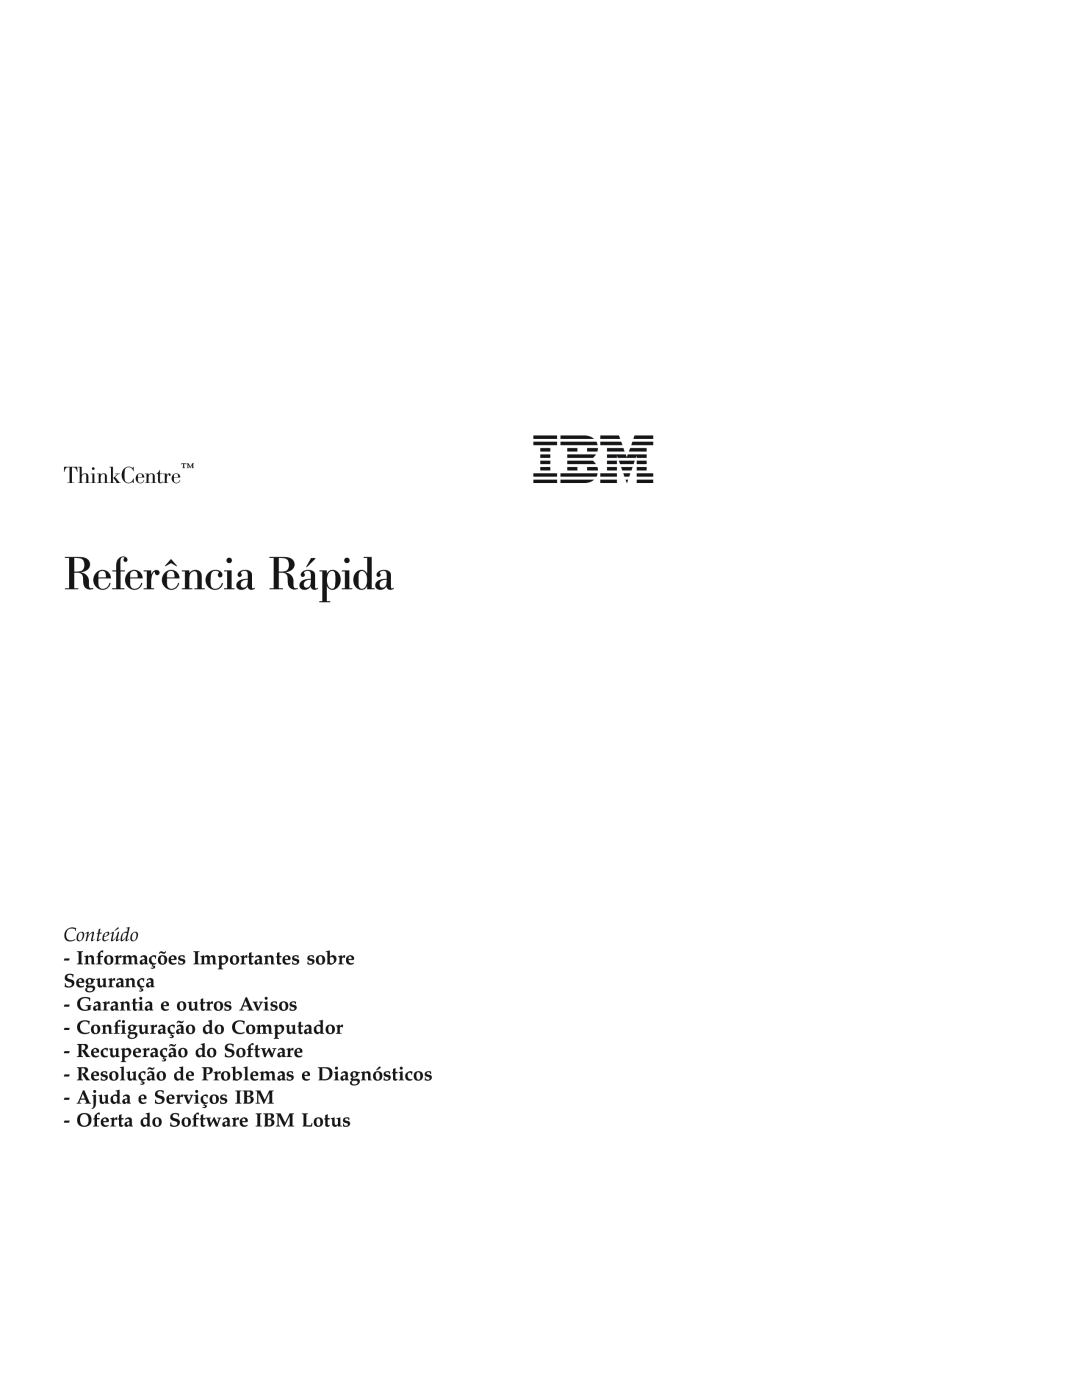 IBM Personal Computer manual Referência Rápida, ThinkCentre, Conteúdo, Configuração do Computador Recuperação do Software 